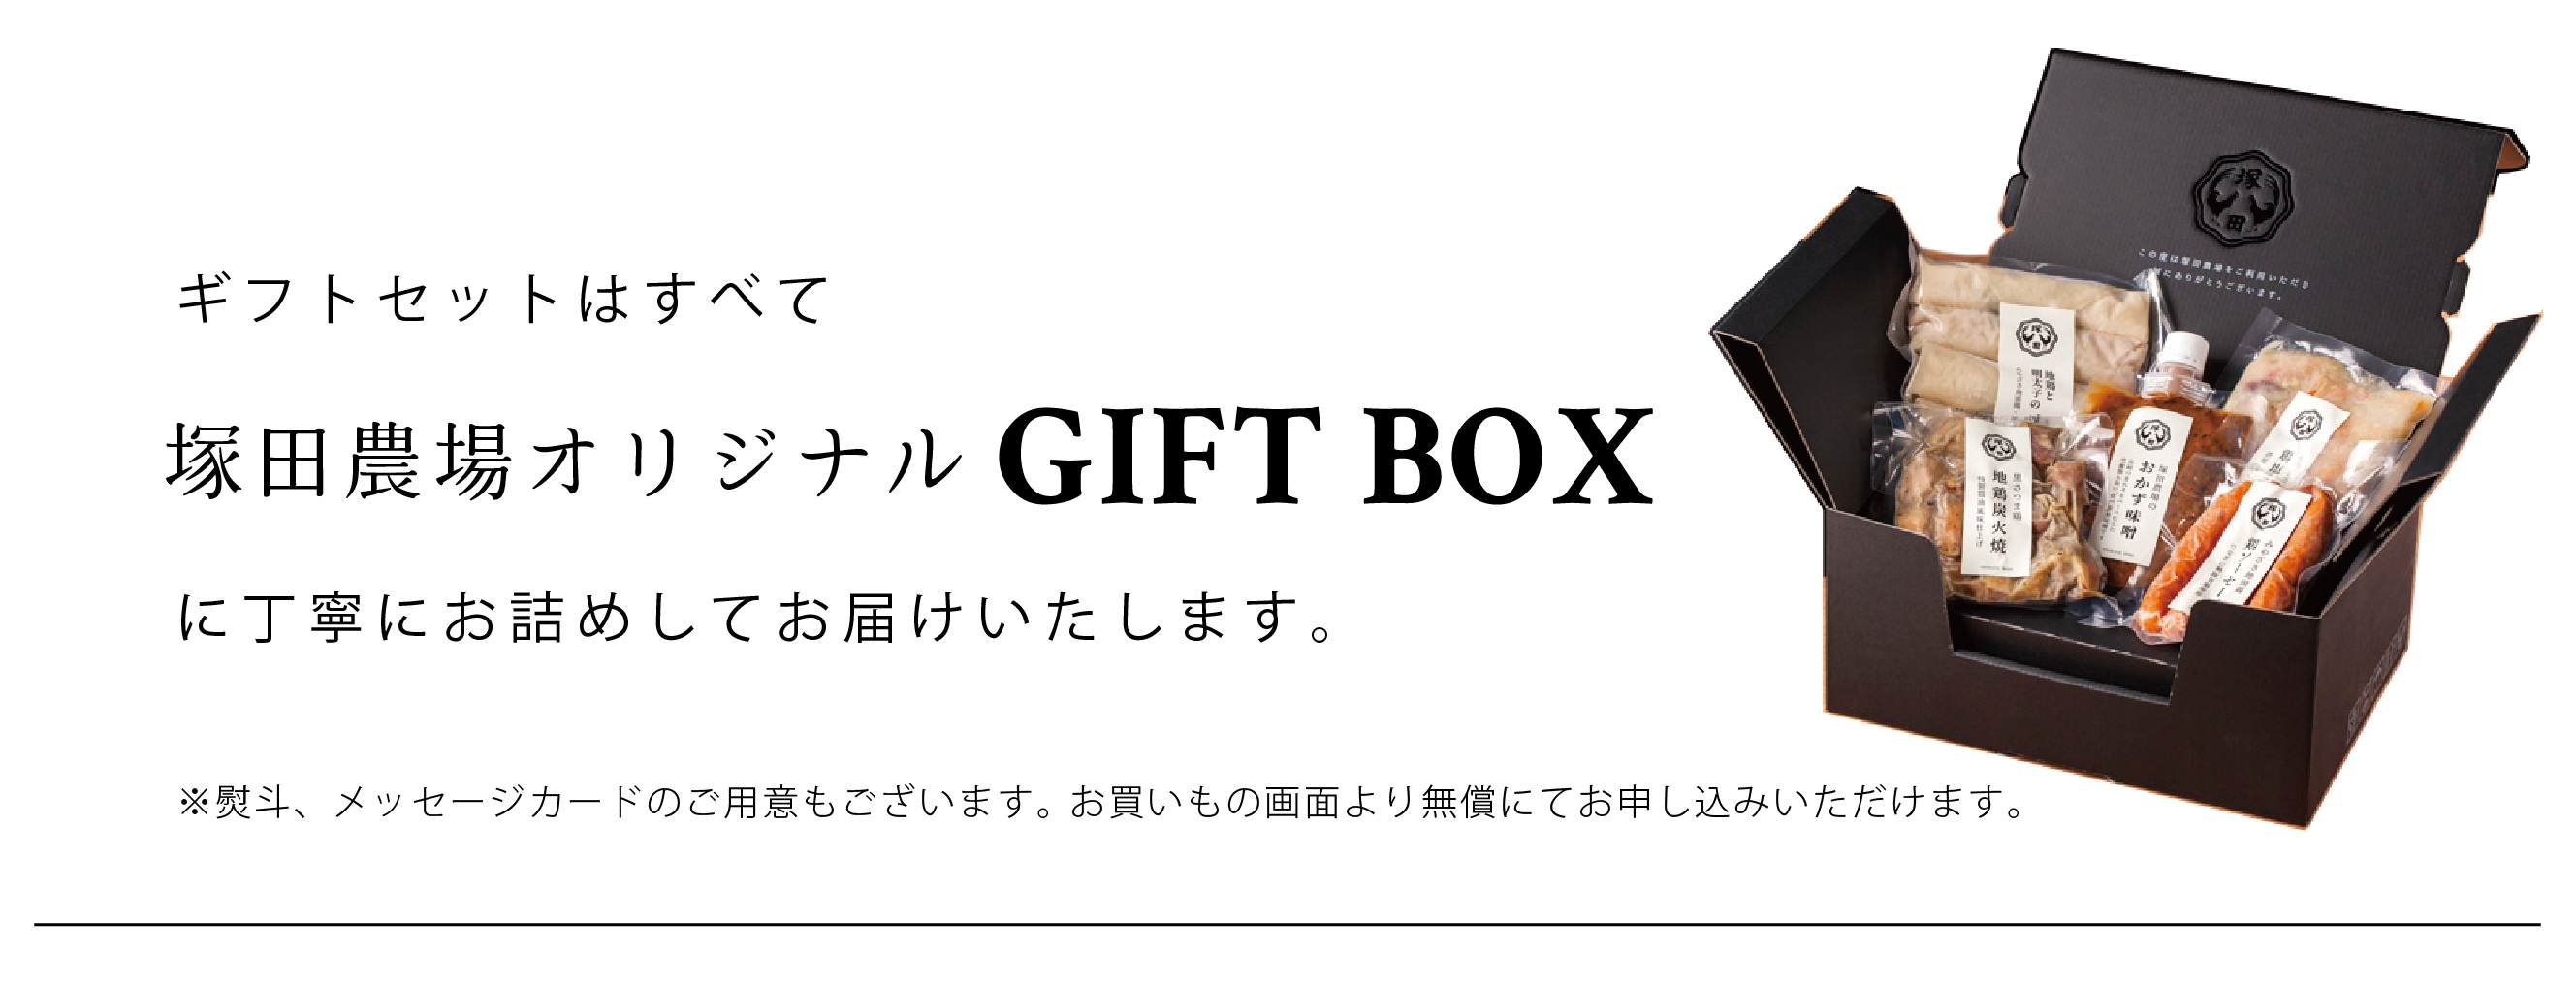 ギフトセットはすべて塚田農場オリジナル GIFT BOX に丁寧にお詰めしてお届けいたします。